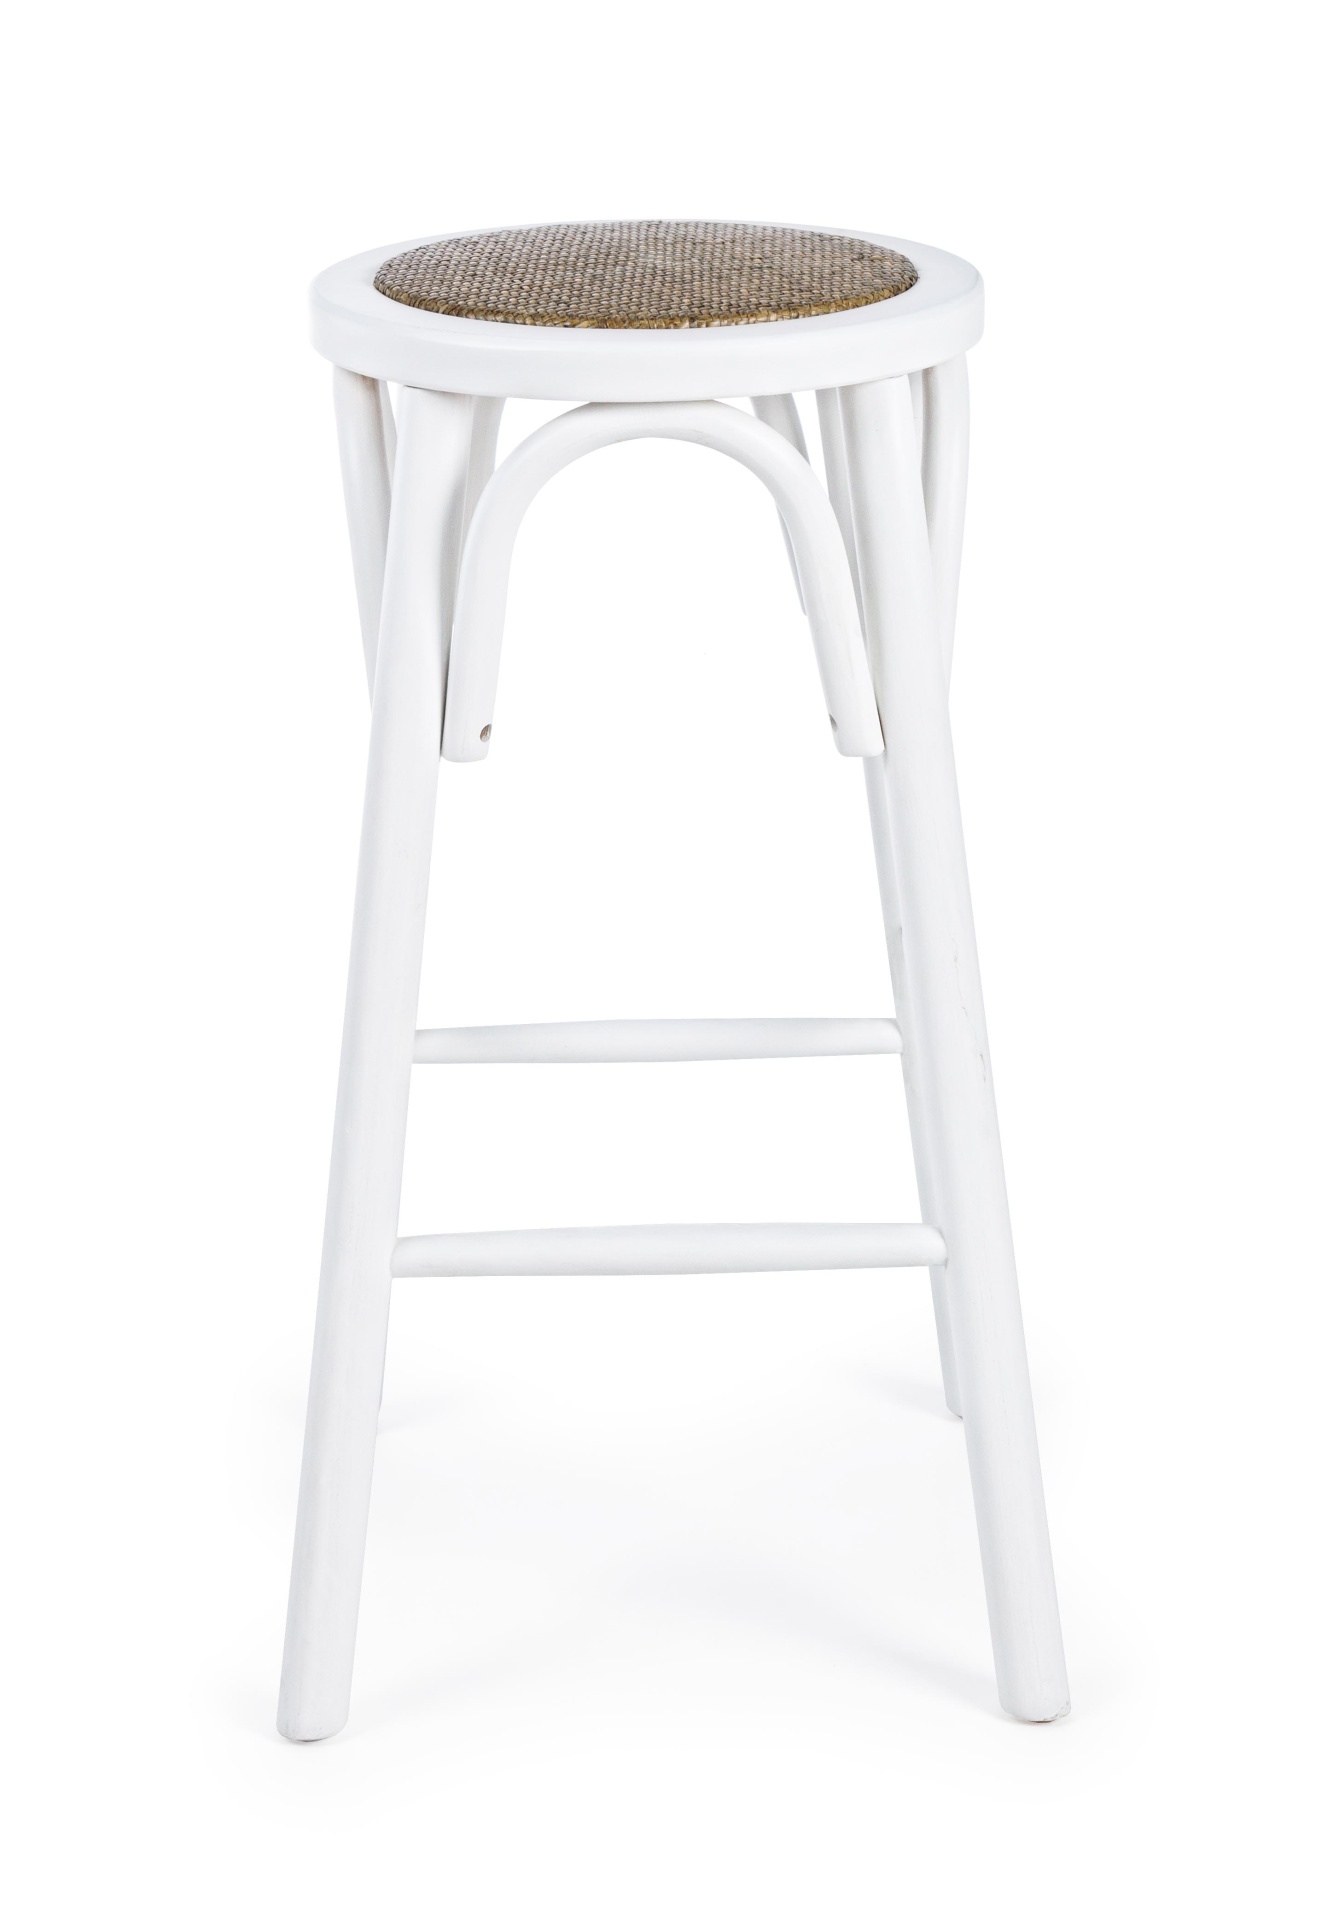 Der Barhocker Circle überzeugt mit seinem klassischen Design. Gefertigt wurde er aus Ulmenholz, welches einen weißen Farbton besitzt. Die Sitzfläche ist aus natürlichem Ratten Geflecht. Die Sitzhöhe des Hockers beträgt 73 cm.